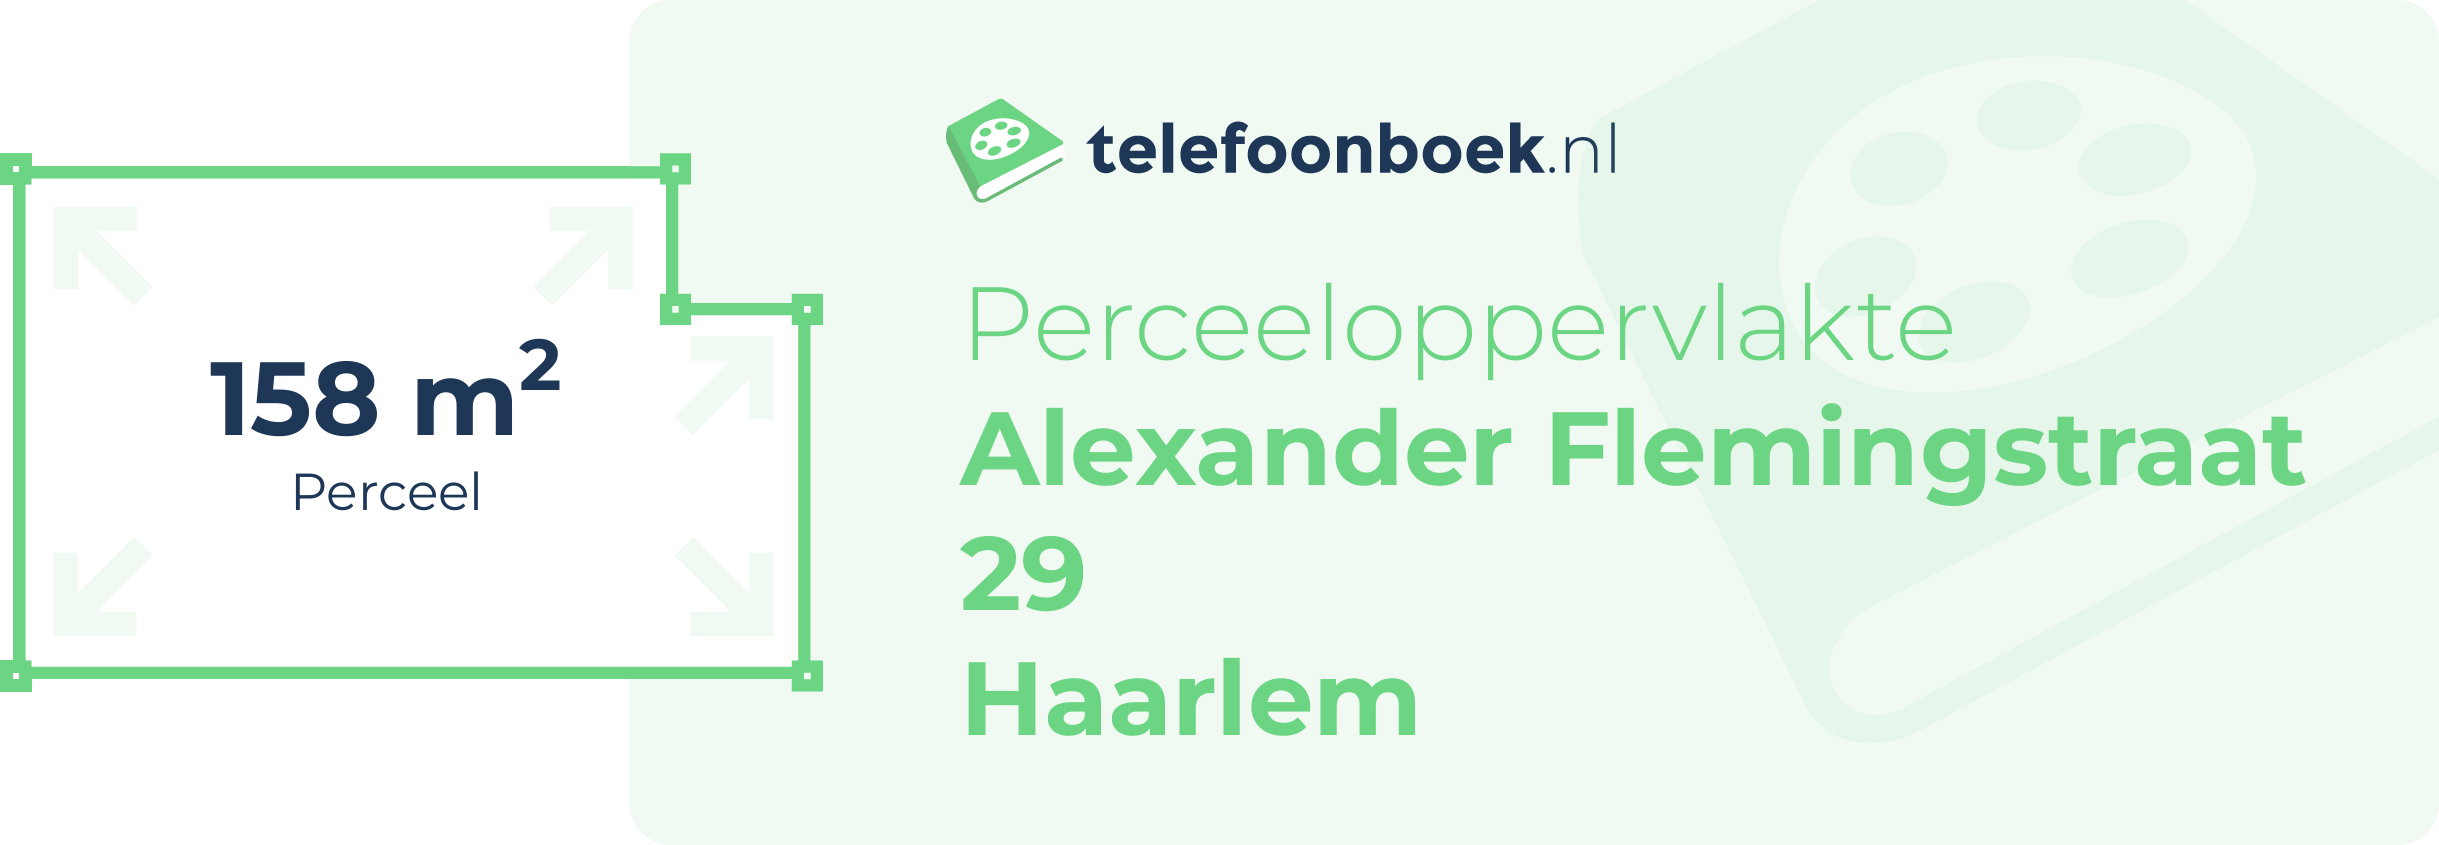 Perceeloppervlakte Alexander Flemingstraat 29 Haarlem